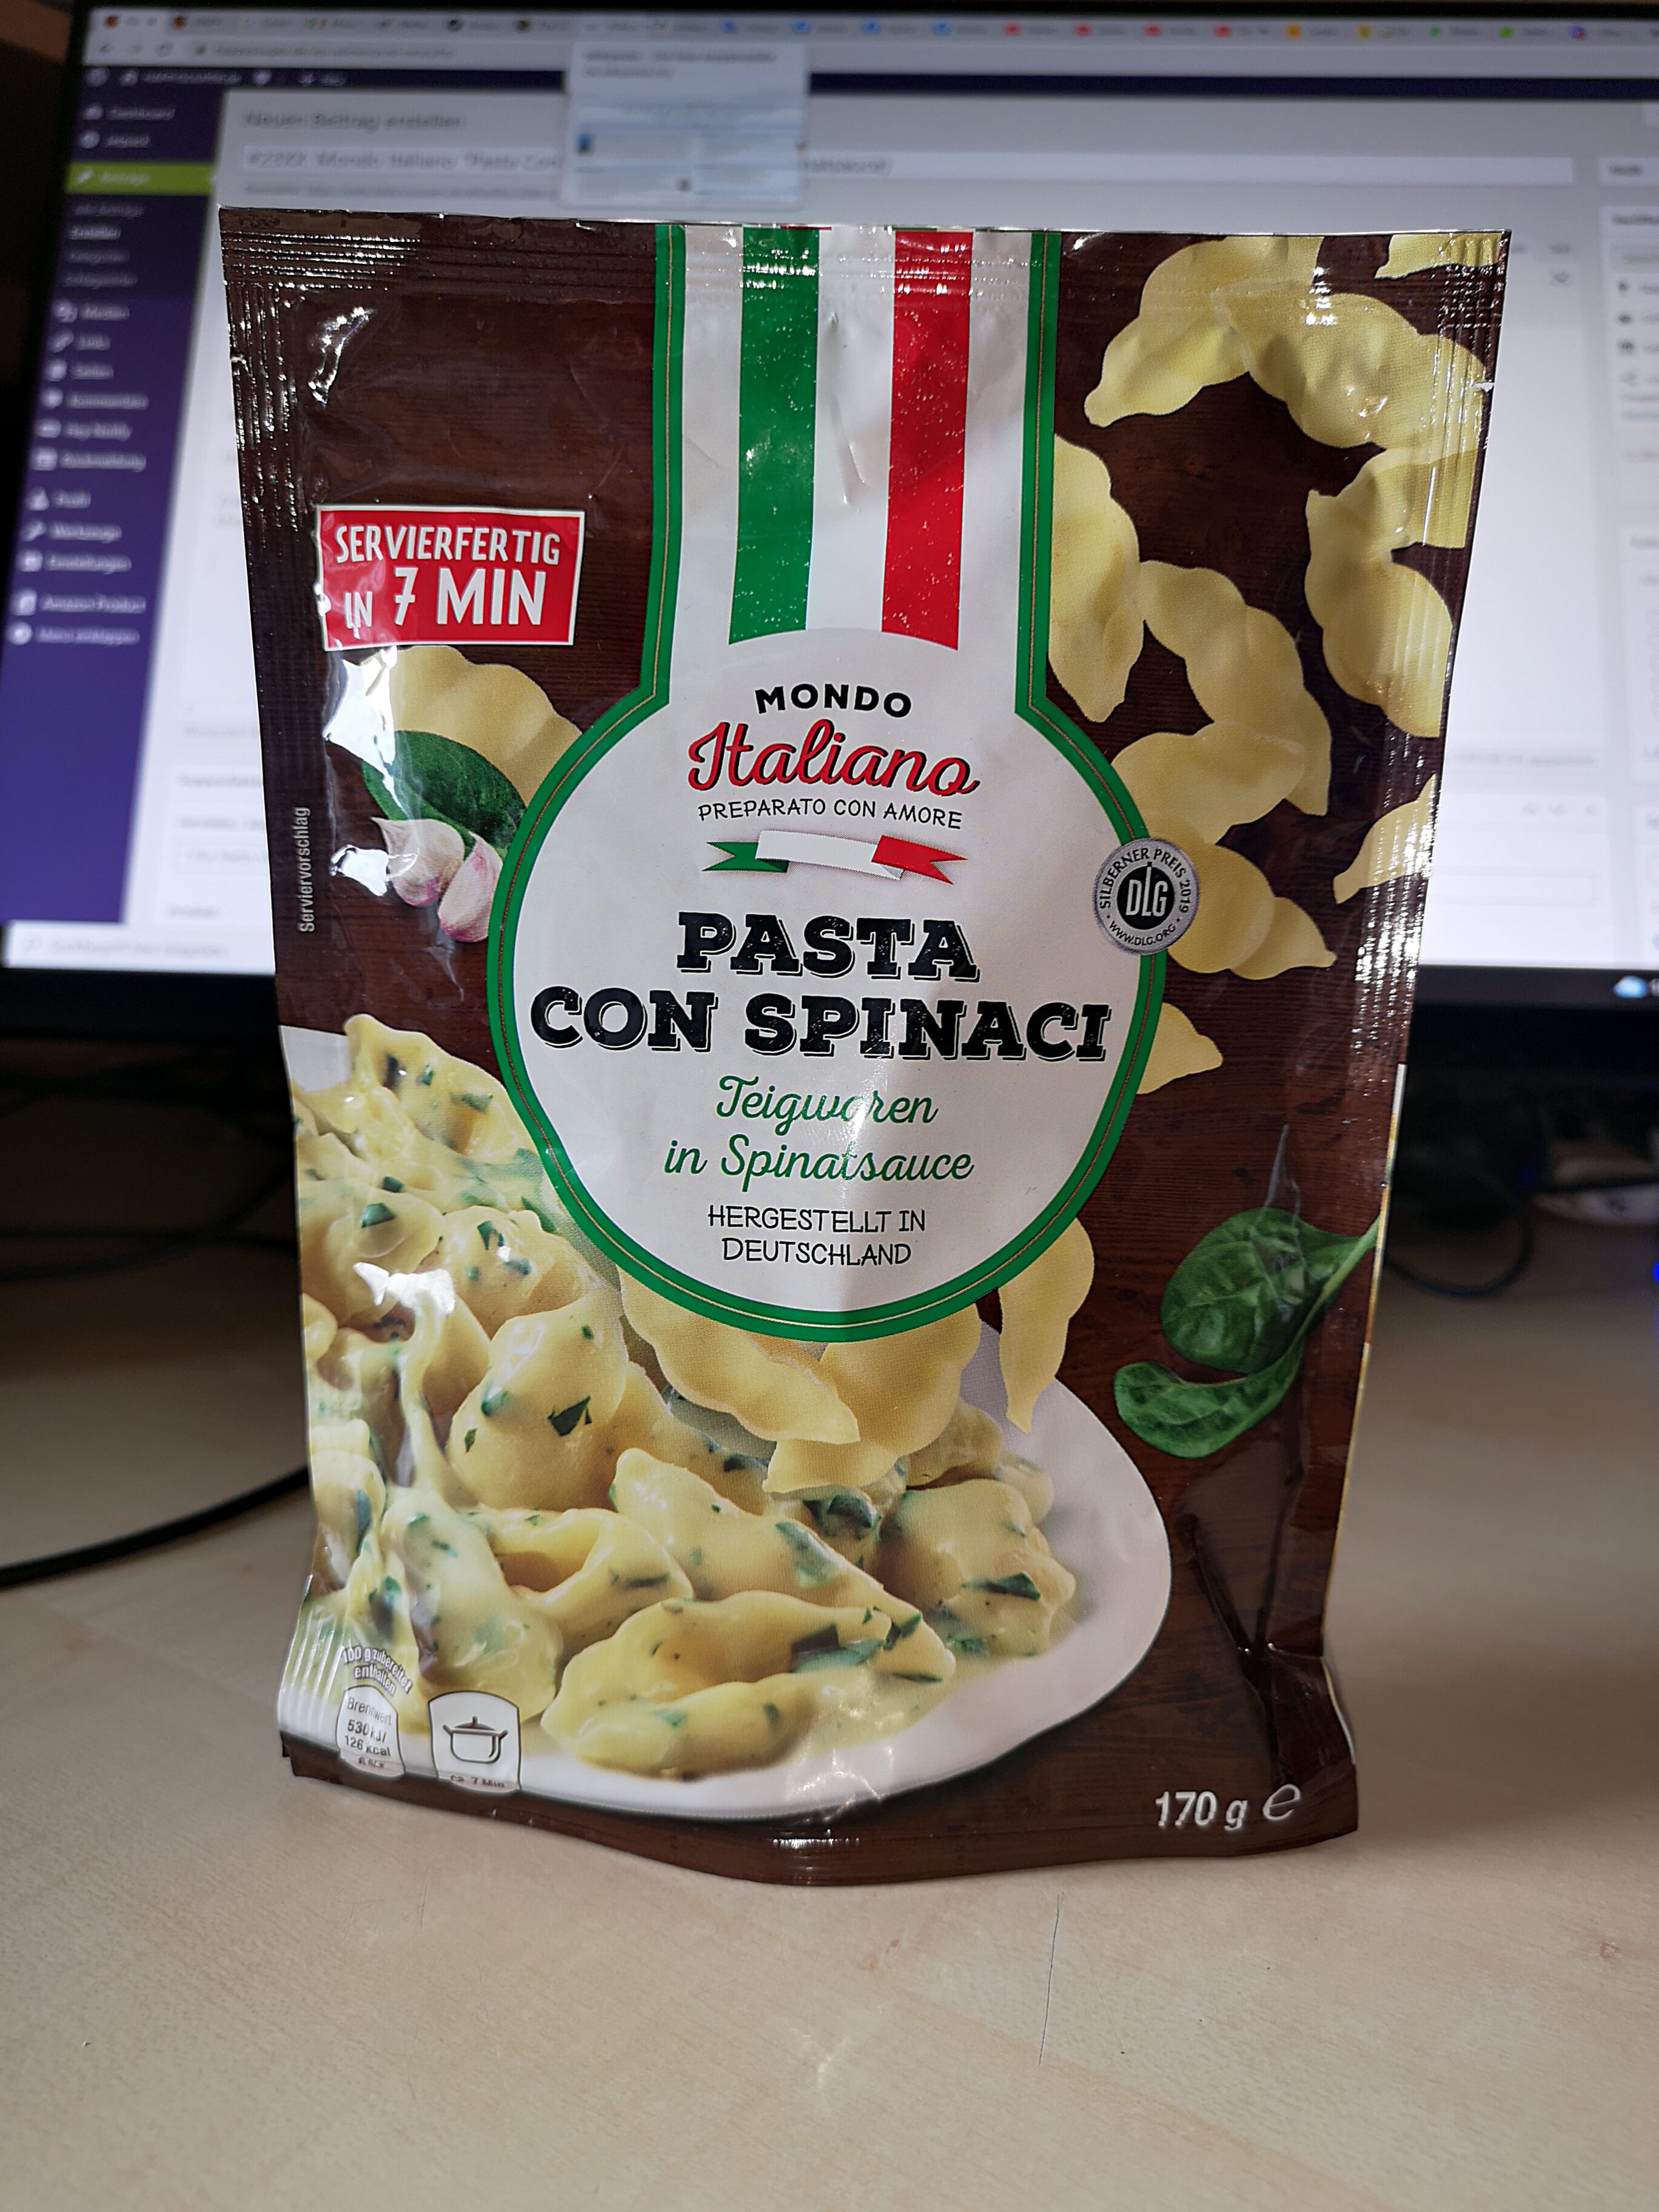 #2394: Mondo Italiano "Pasta Con Spinaci" (Teigwaren in Spinatsauce)